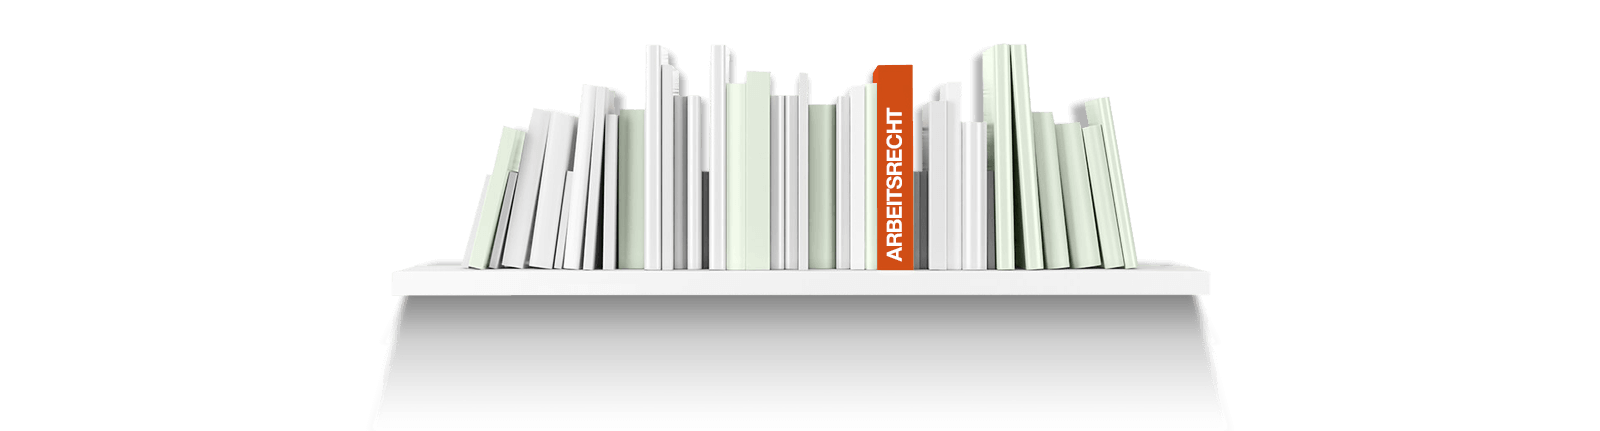 Bild zeigt ein Bücherregal mit einem Buch zum Thema Arbeitsrecht